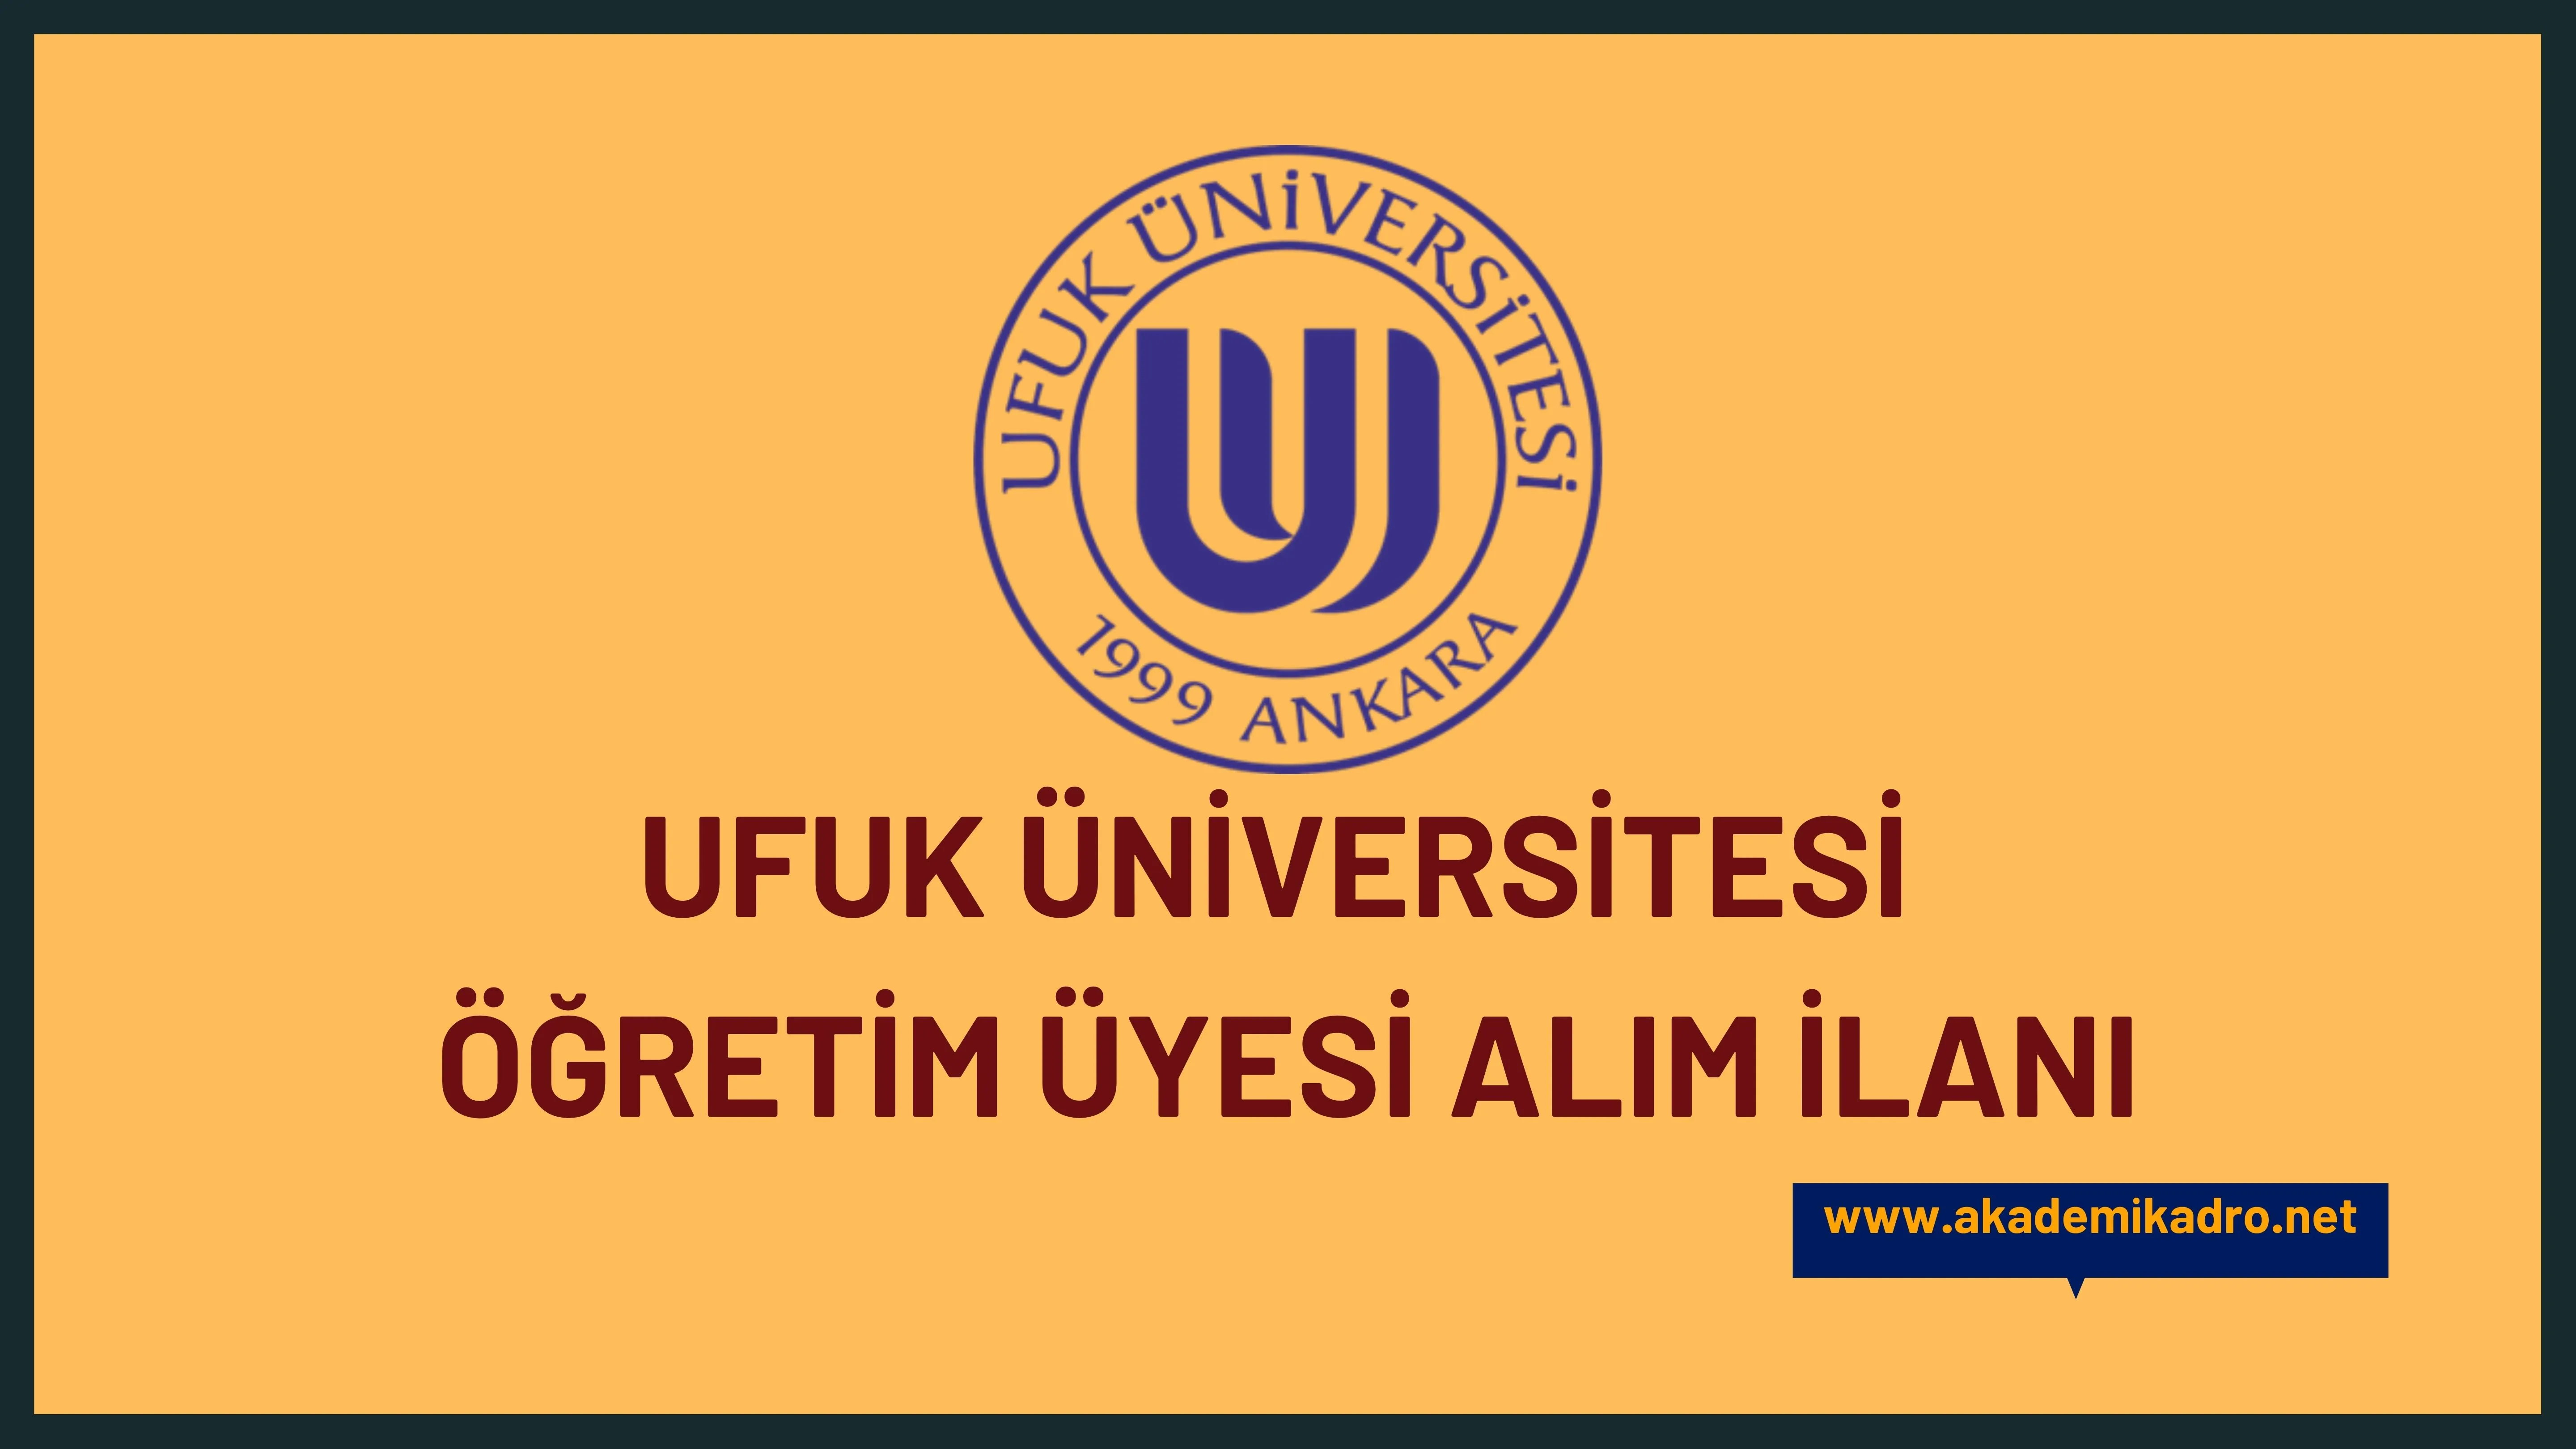 Ufuk Üniversitesi birçok alandan 21 Öğretim üyesi alacak. Son başvuru tarihi 01 Kasım 2022.